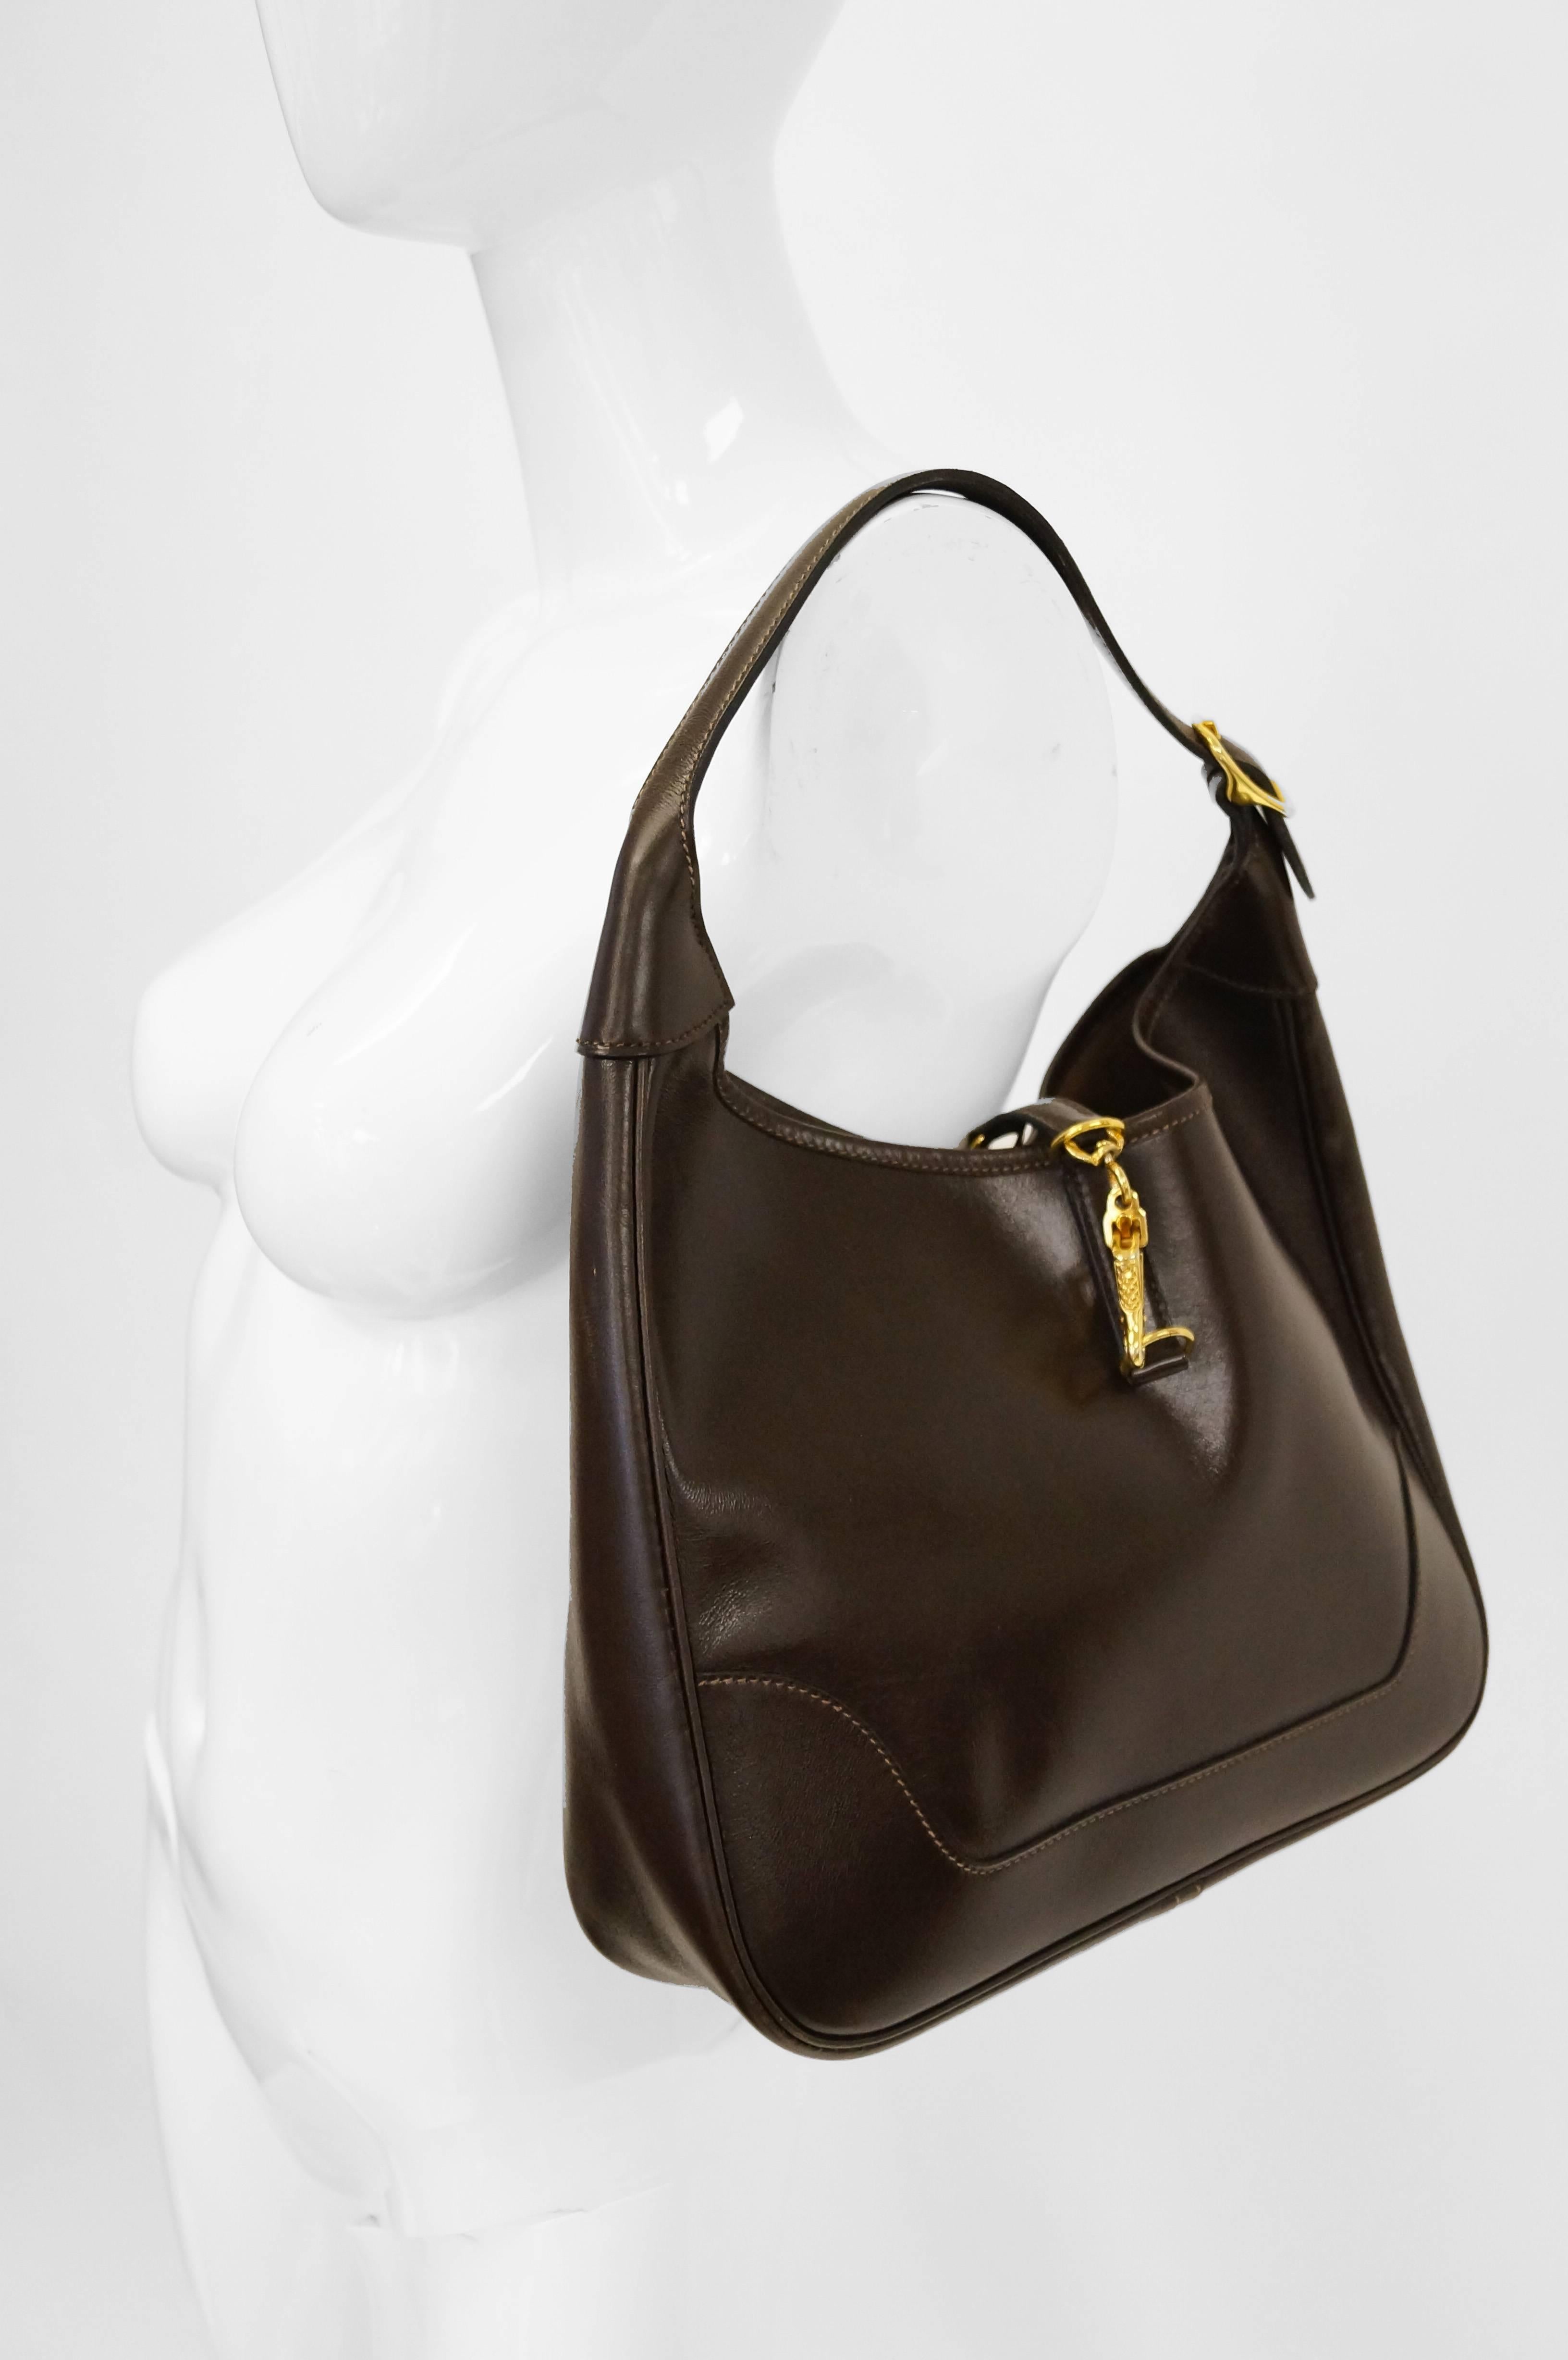 Hermès “Trim” Leather Shoulder Bag in Brown, 1960s  7